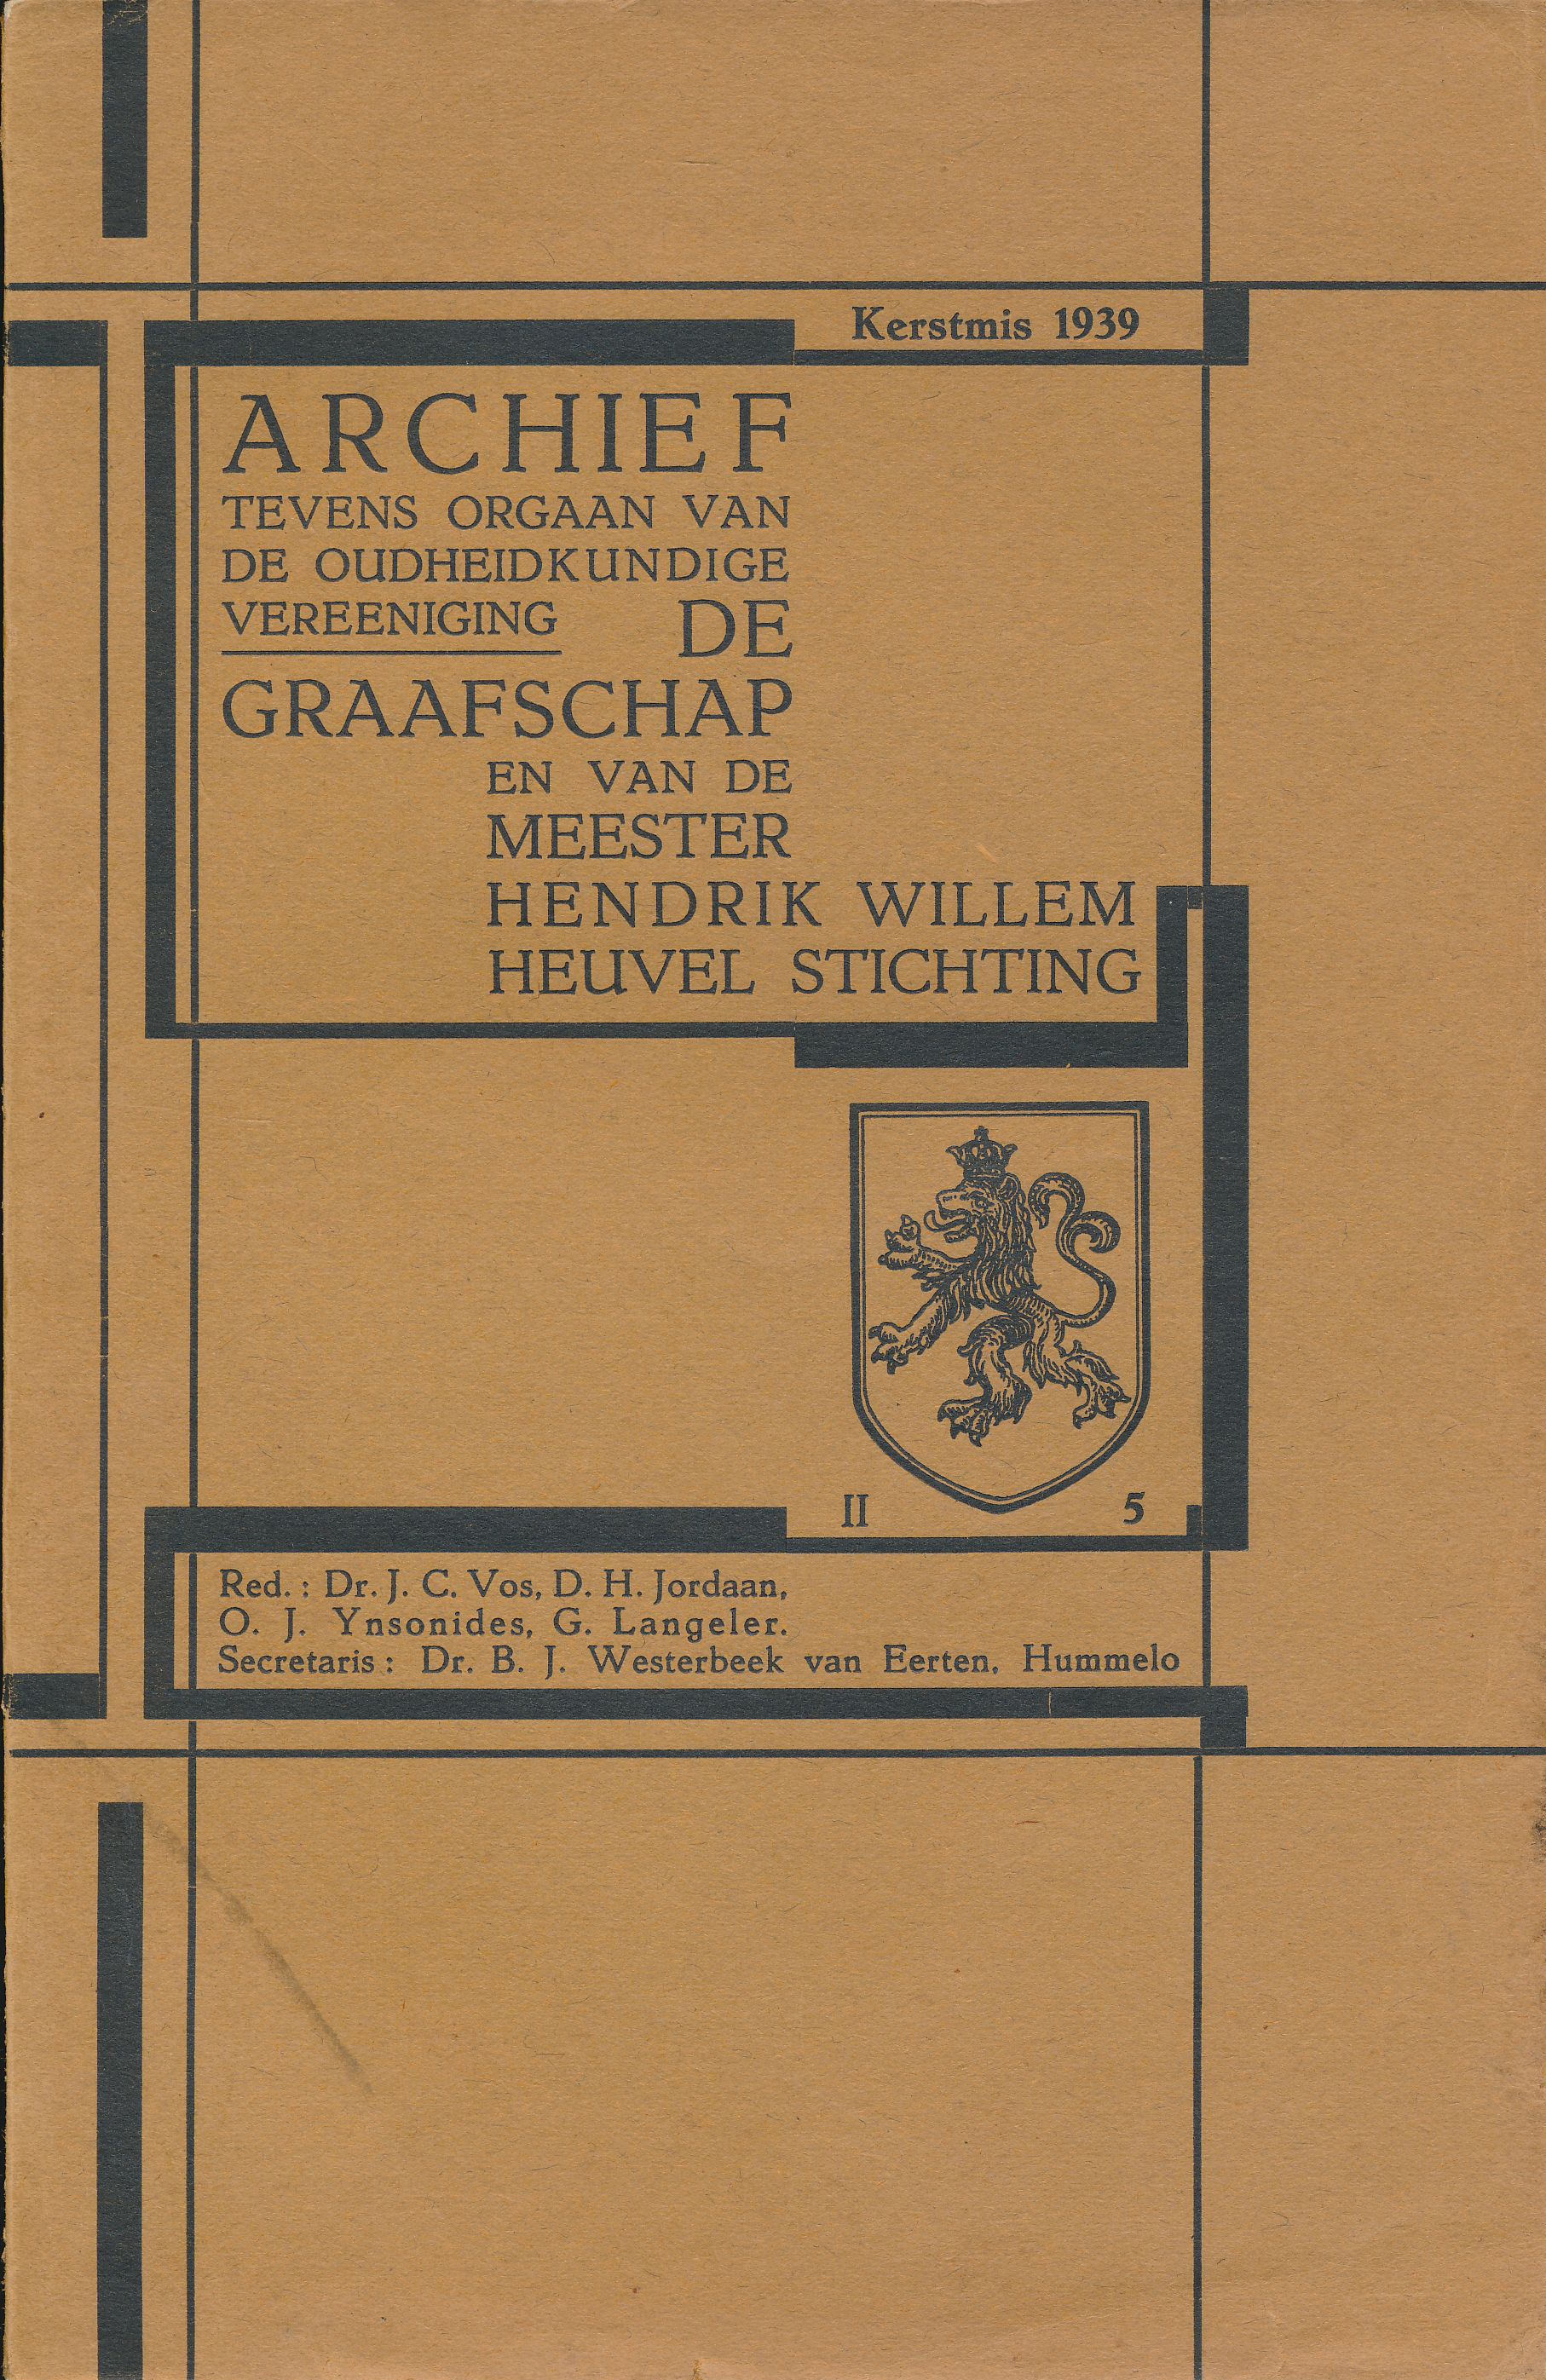 Voorblad Archief, tevens orgaan van de Oudheidkundige Vereniging_De_Graafschap,_Kersmis 1939